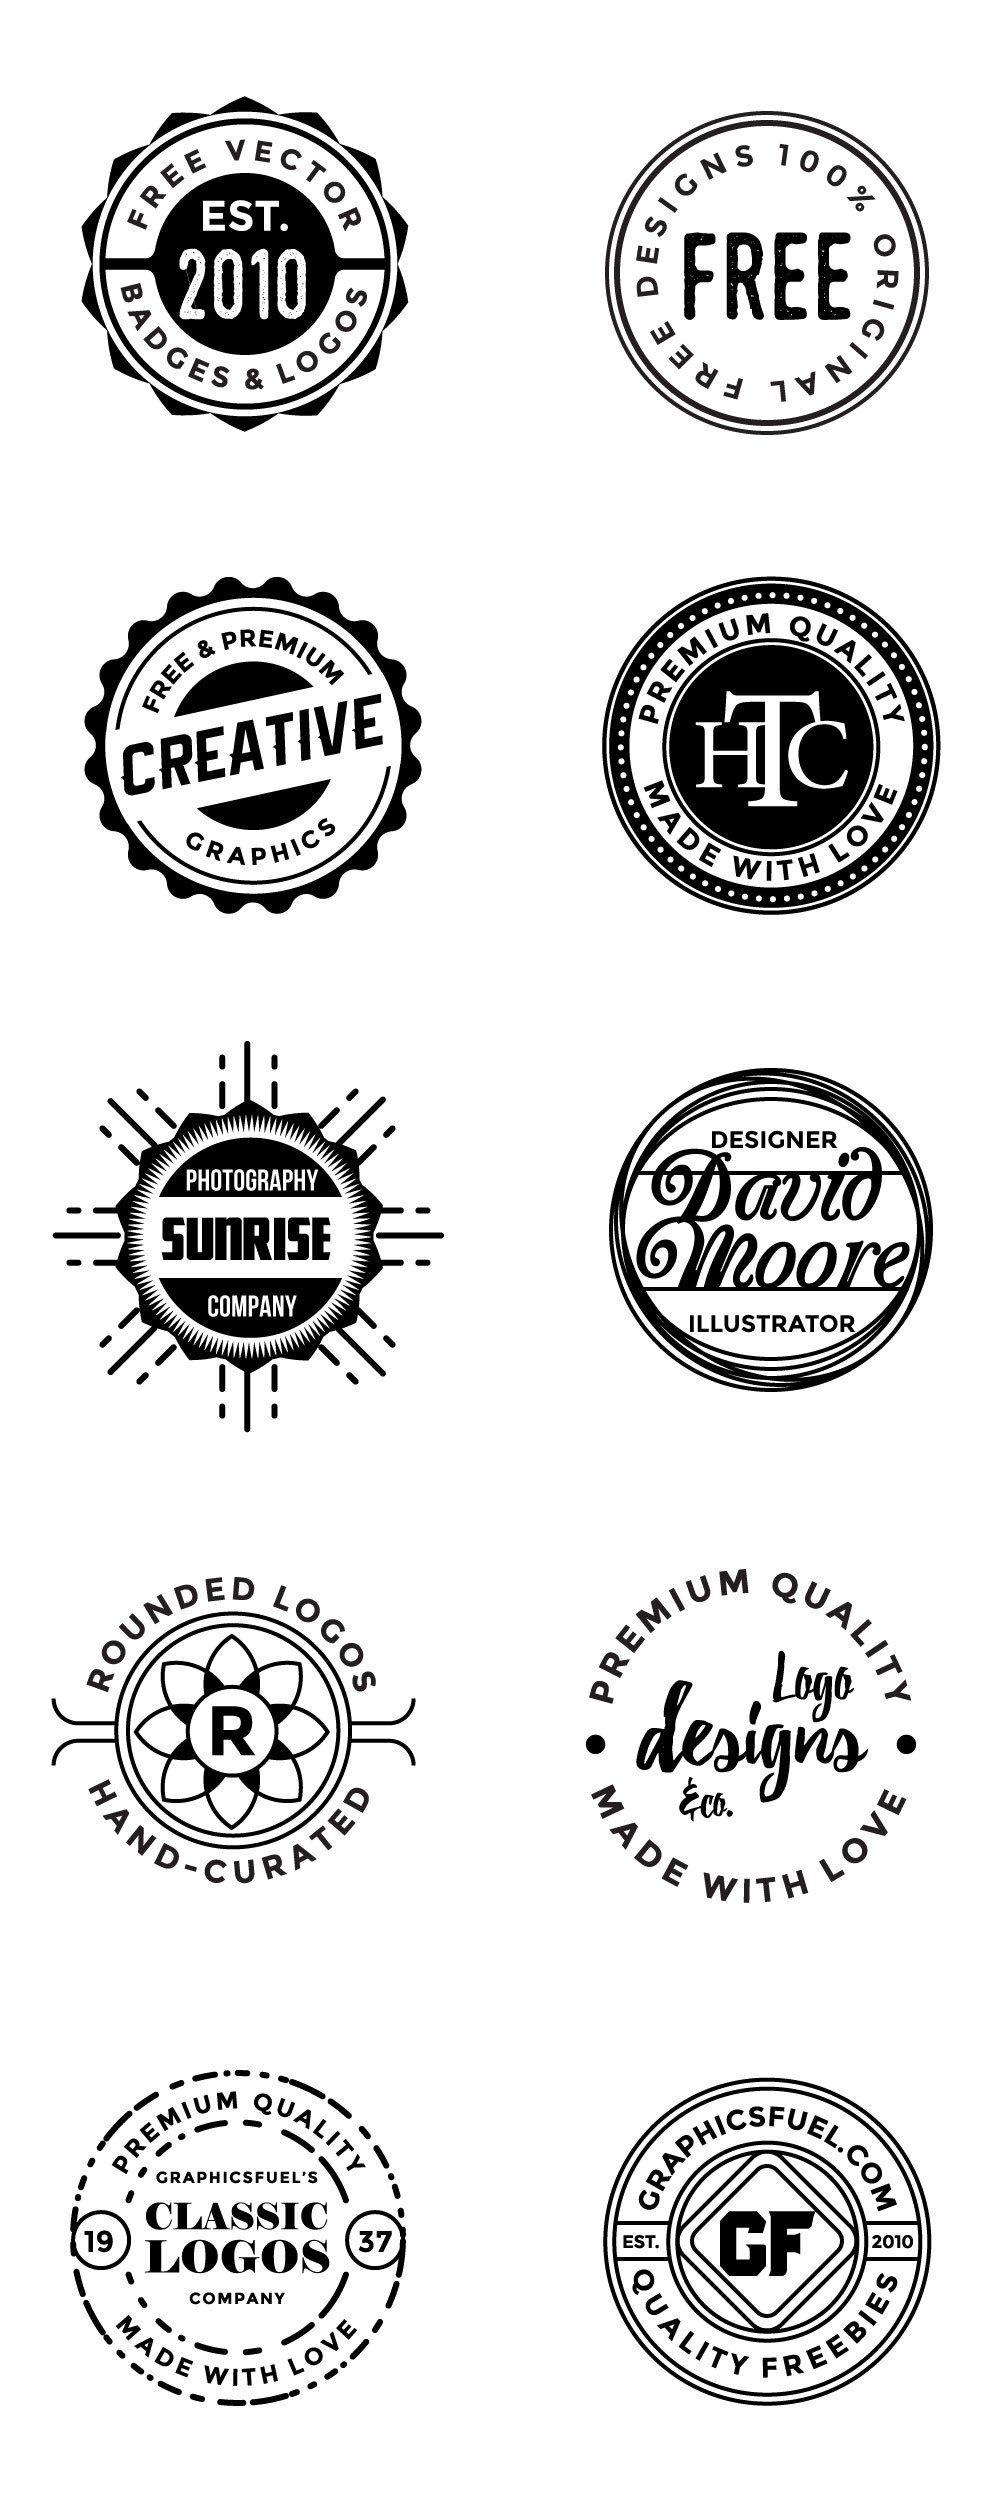 Circle Round Logo - Free Circular logos And Badges